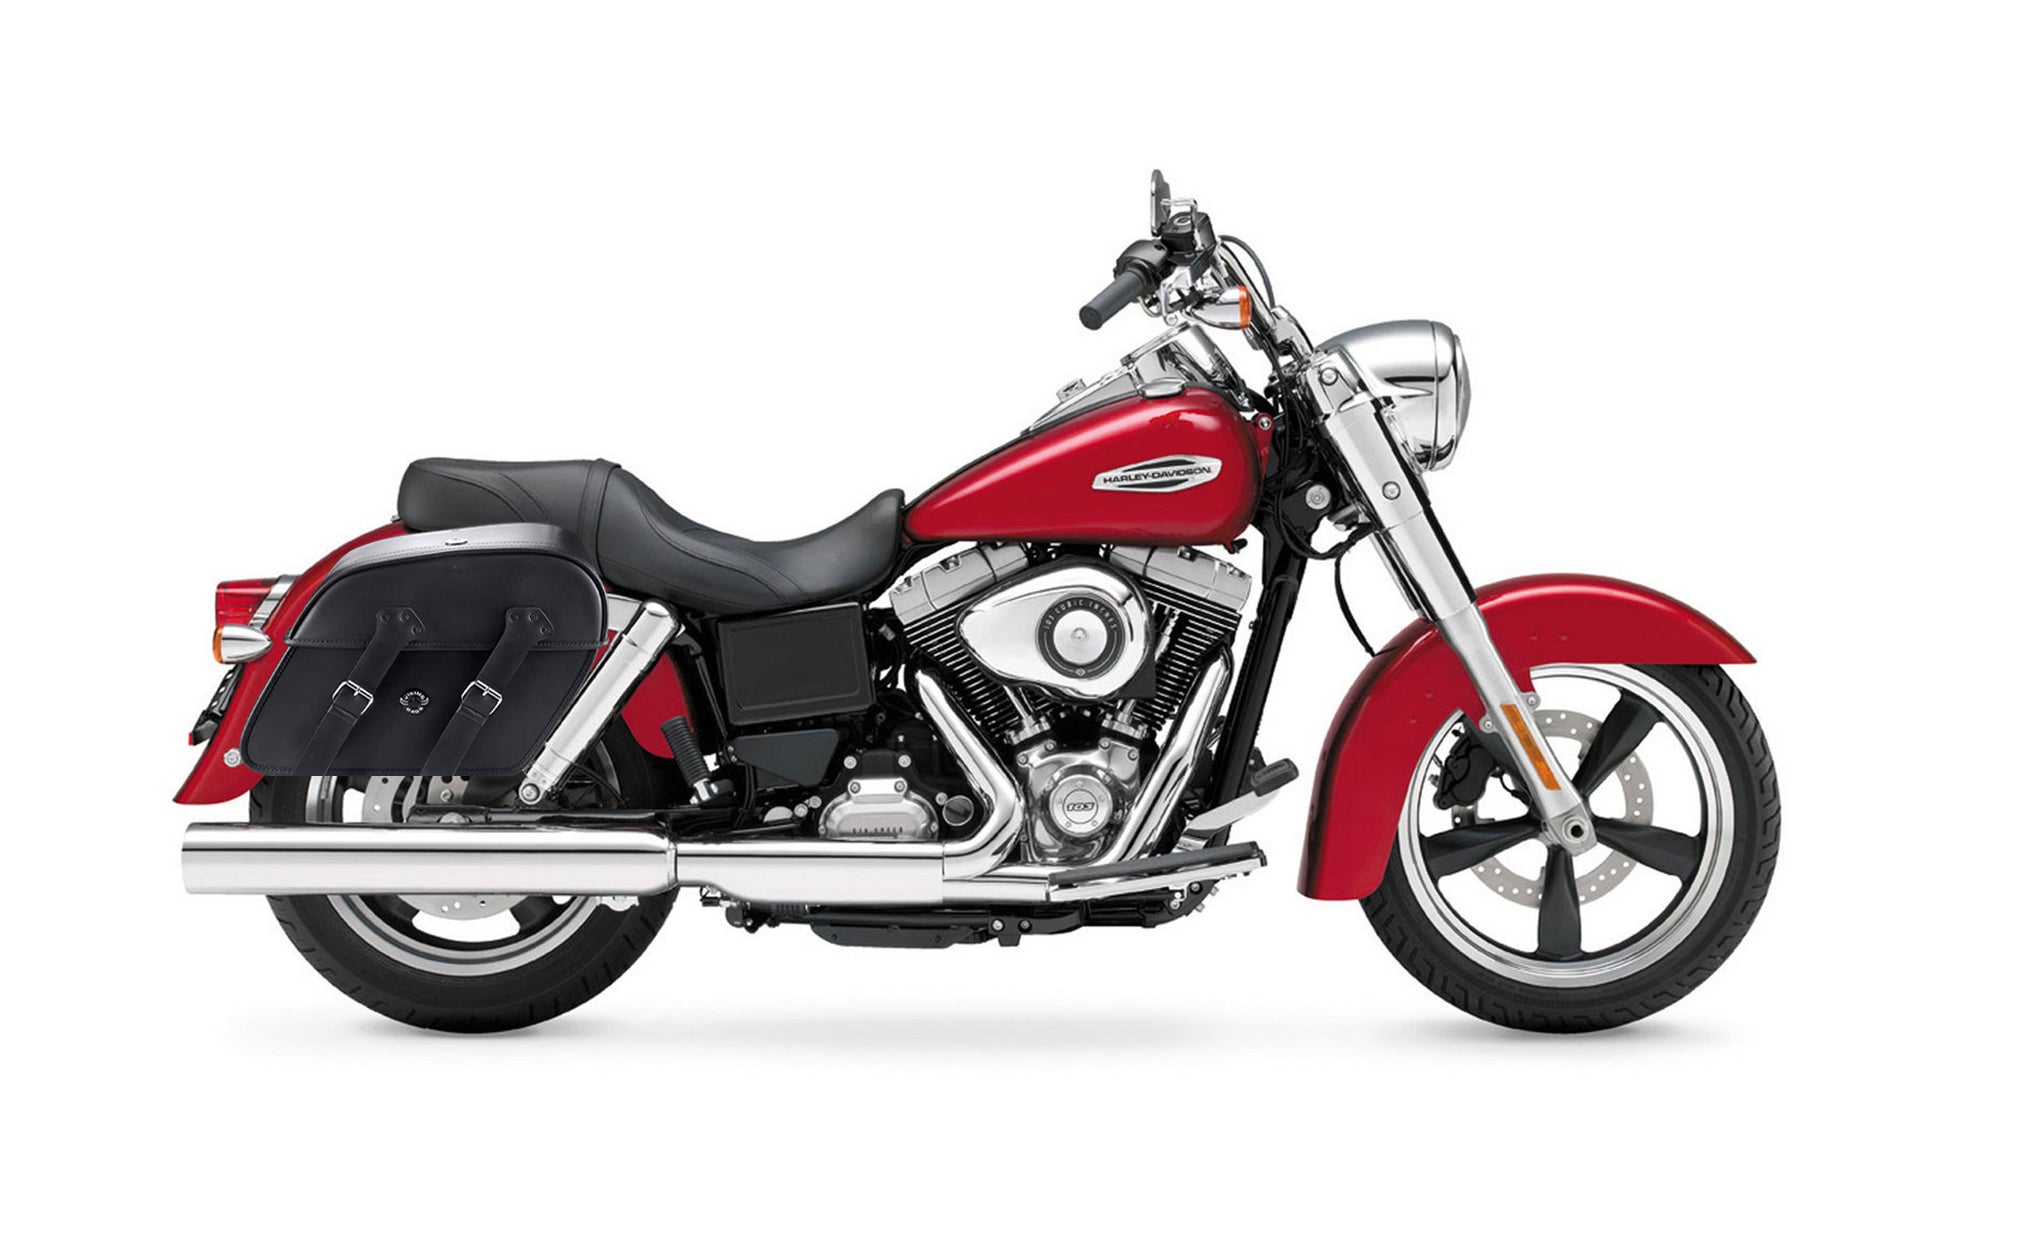 Viking Raven Large Motorcycle Leather Saddlebags For Harley Dyna Switchback Fld on Bike Photo @expand